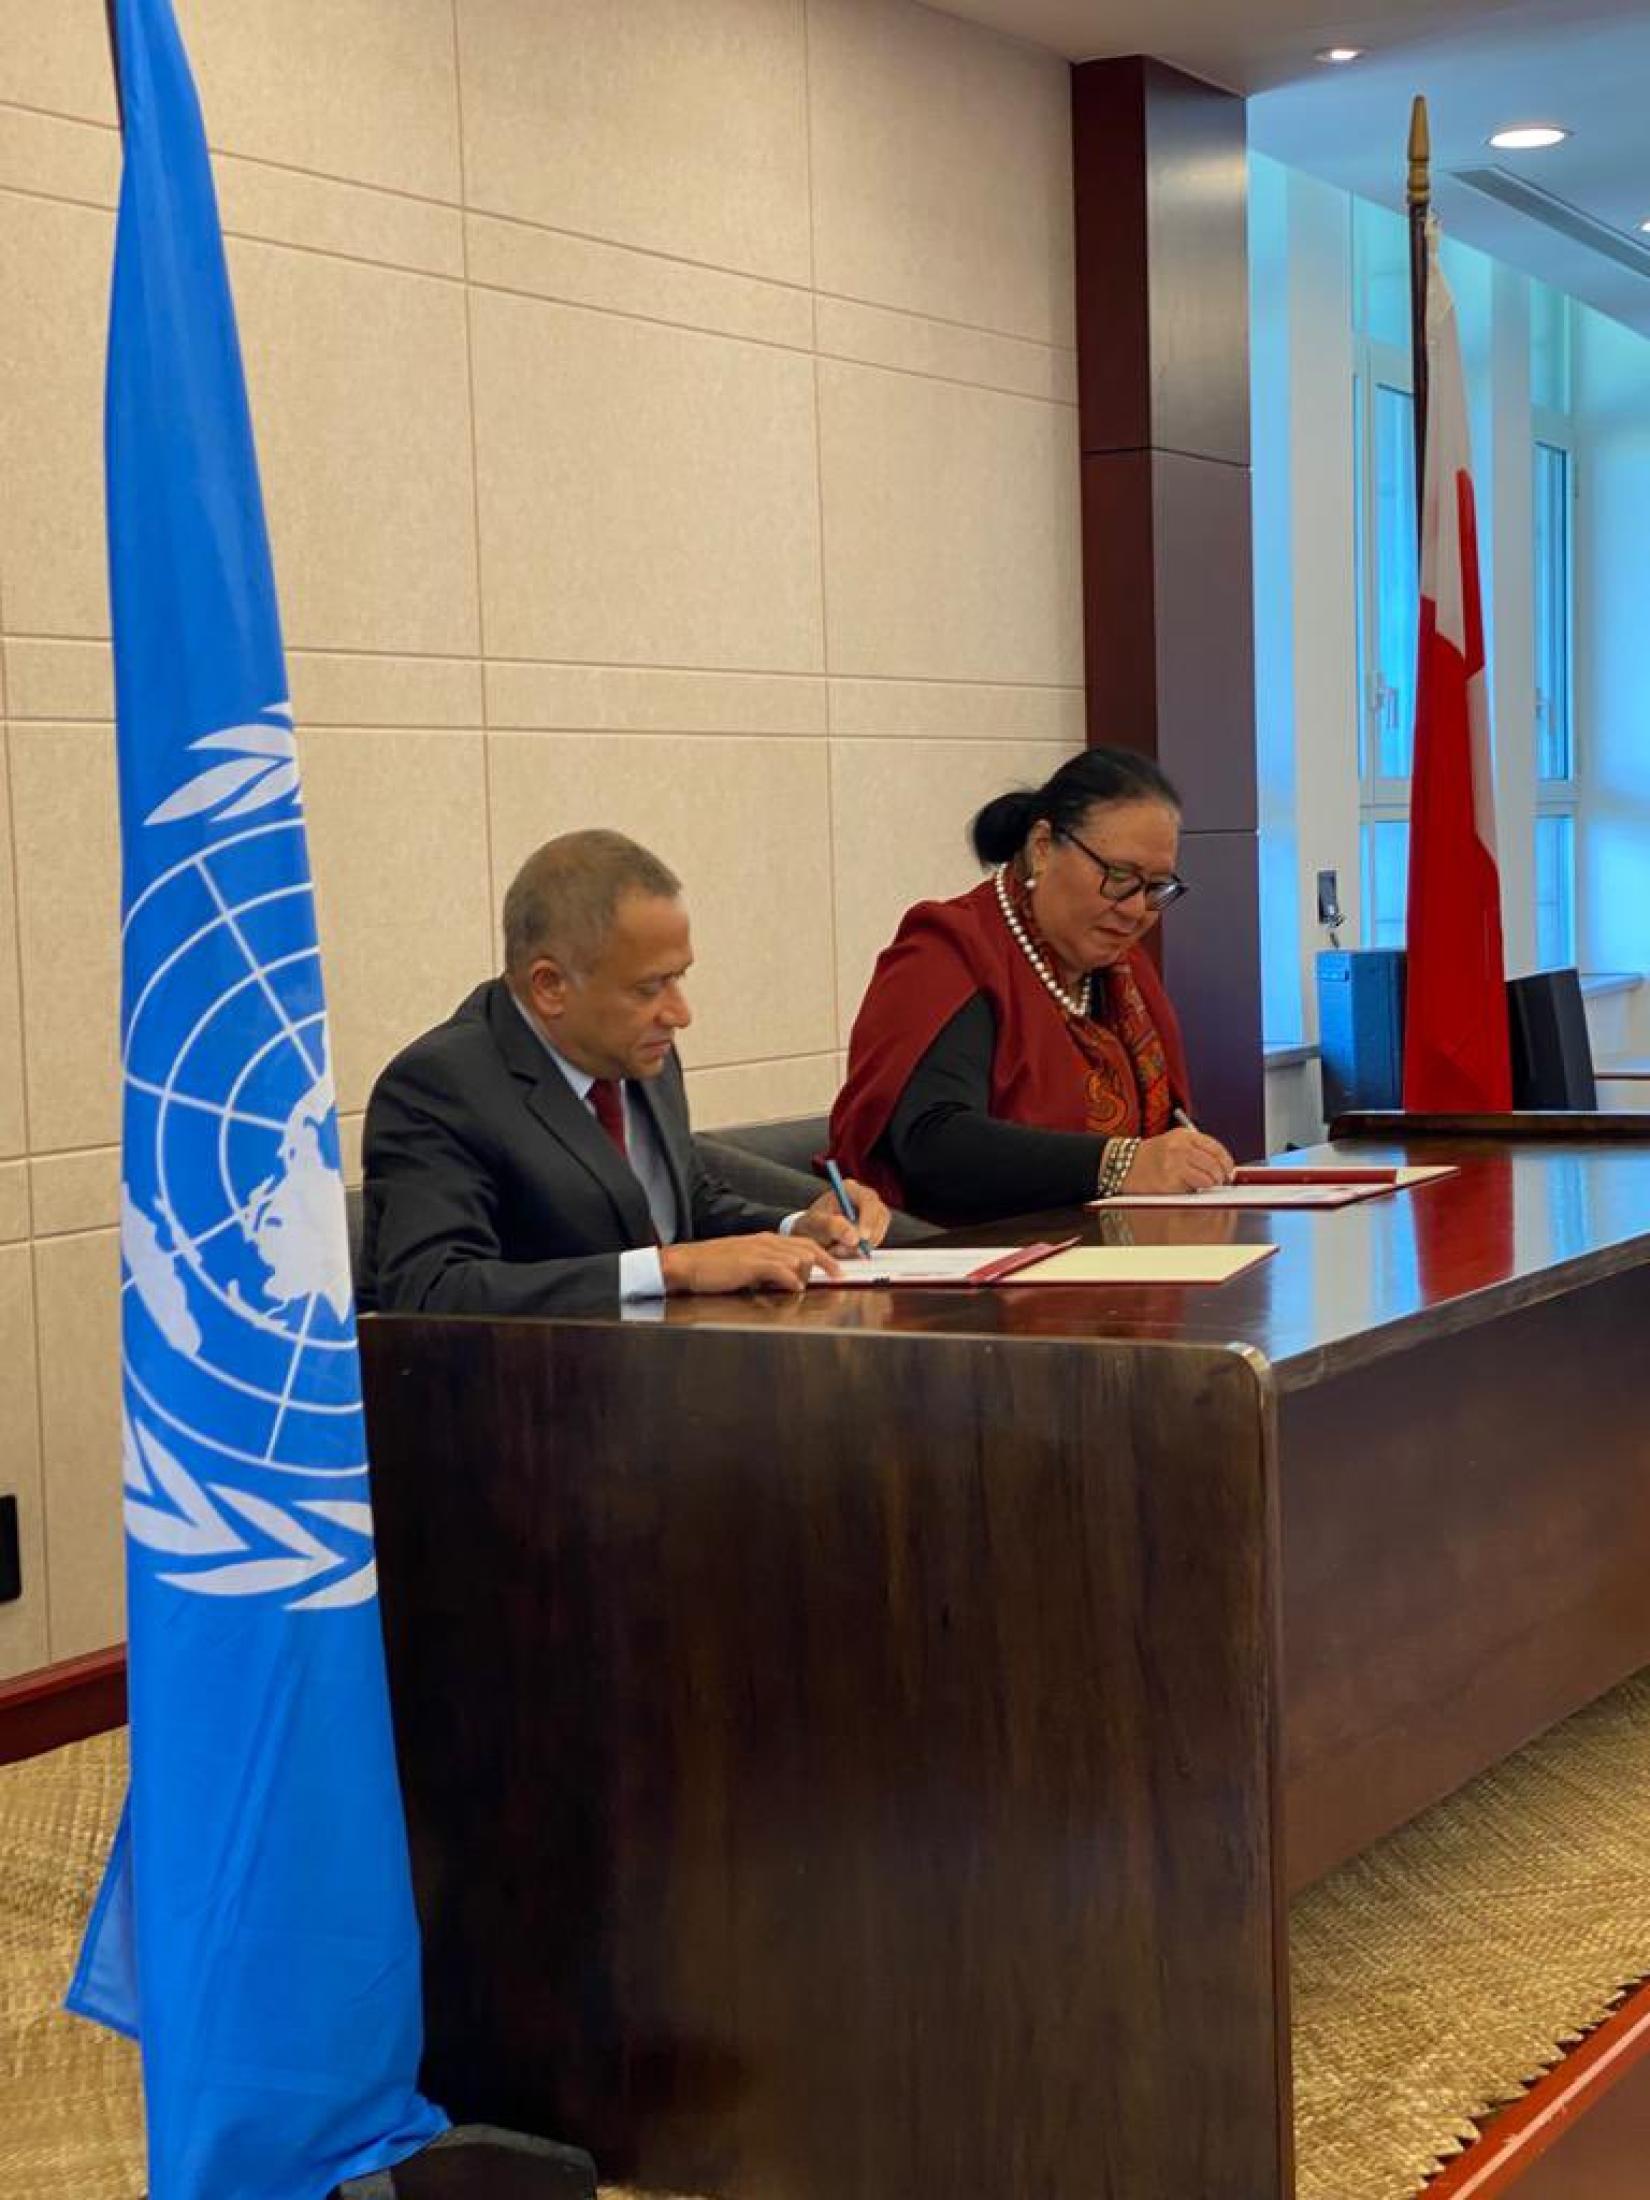 Mr Samarasinha and Tonga's Minister of Foreign Affairs, Hon. Fekitamoelao ‘Utoikamanu sign the Cooperation Framework in Nuku'alofa, Tonga. 